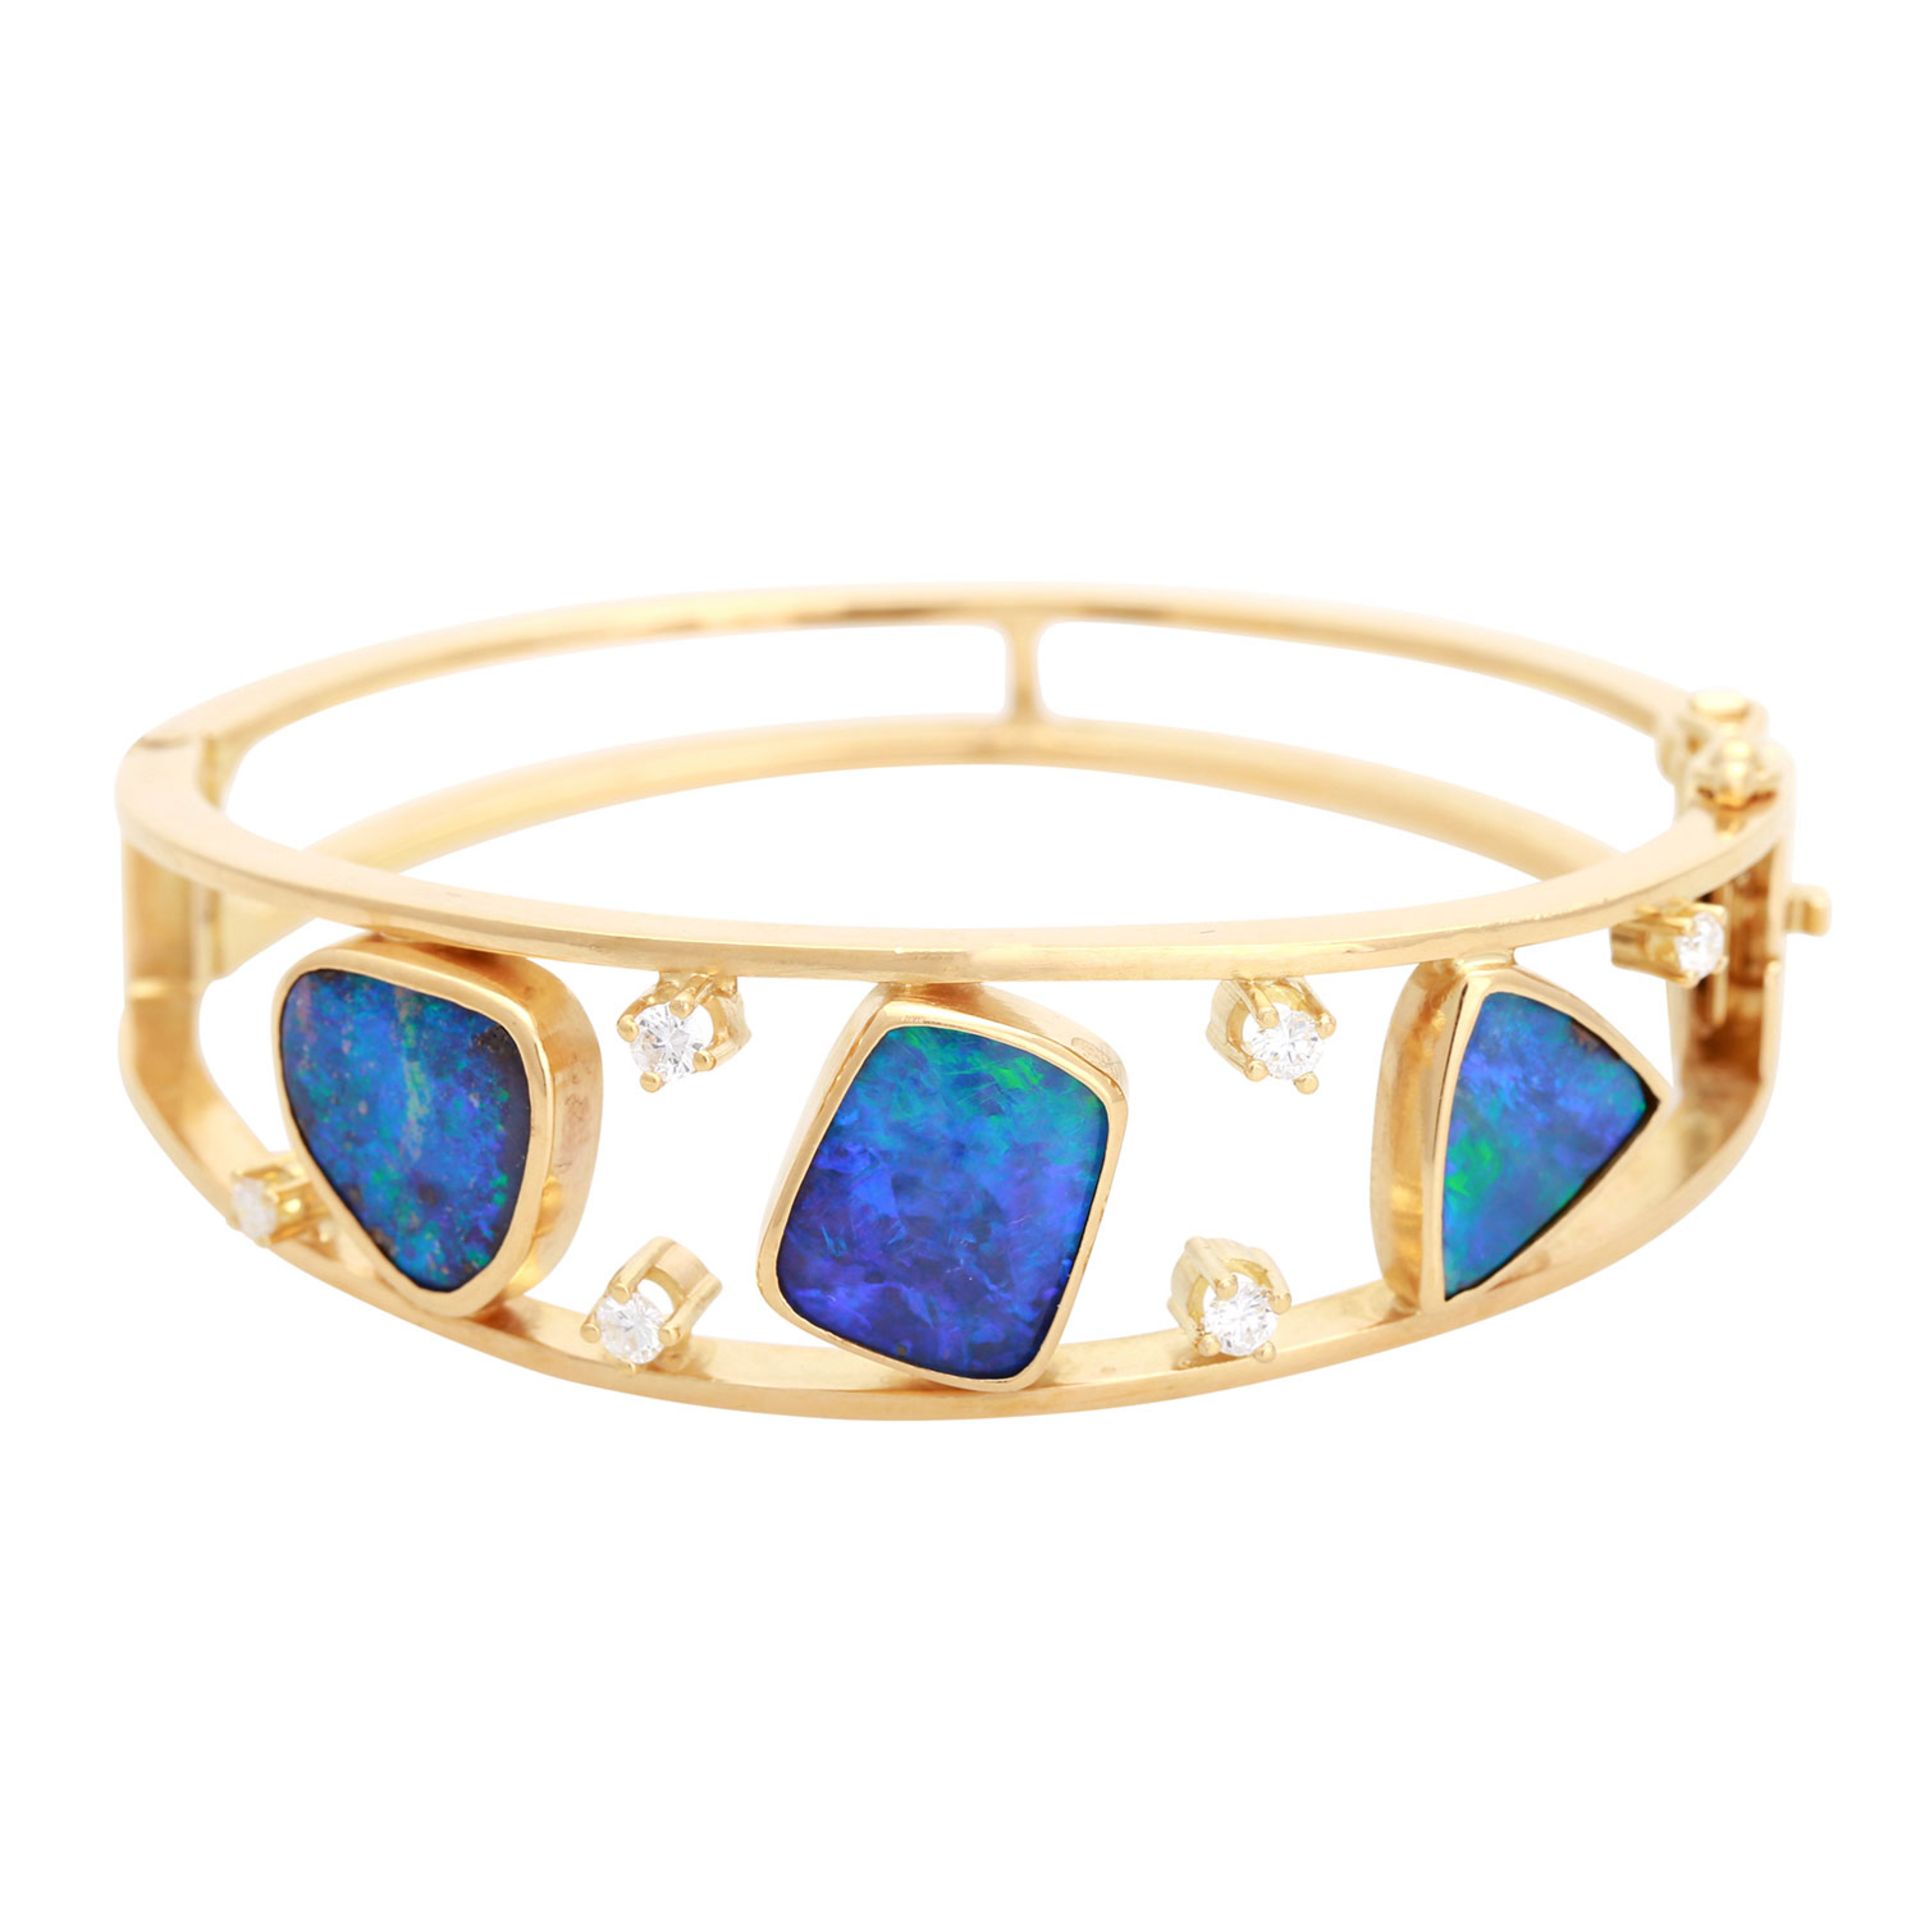 Armreif mit Opalen und Diamanten, 3 Boulder-Opale mit vorwiegend grünen und blauen Farbreflexen, 6